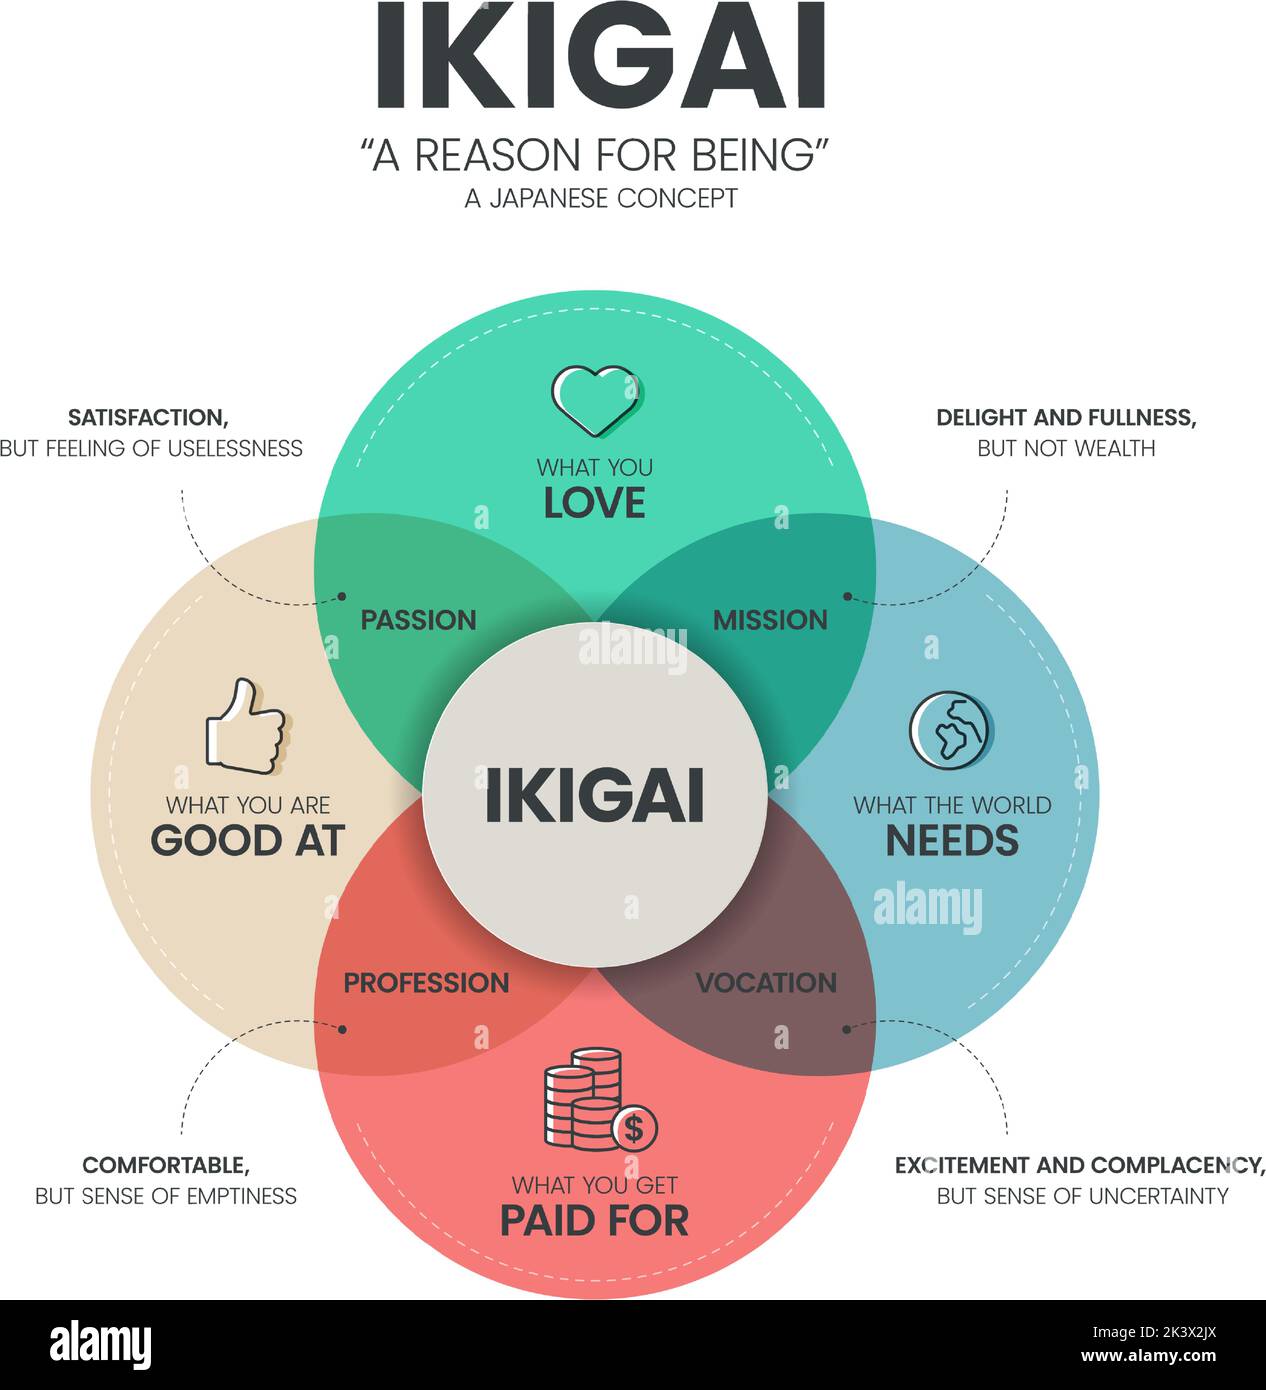 IKIGAI oder Grund für sein Diagramm Infografik Vorlage hat 4 Arten zu analysieren, wie Leidenschaft, Mission, Berufung und Beruf. Japanisch denkende Co Stock Vektor